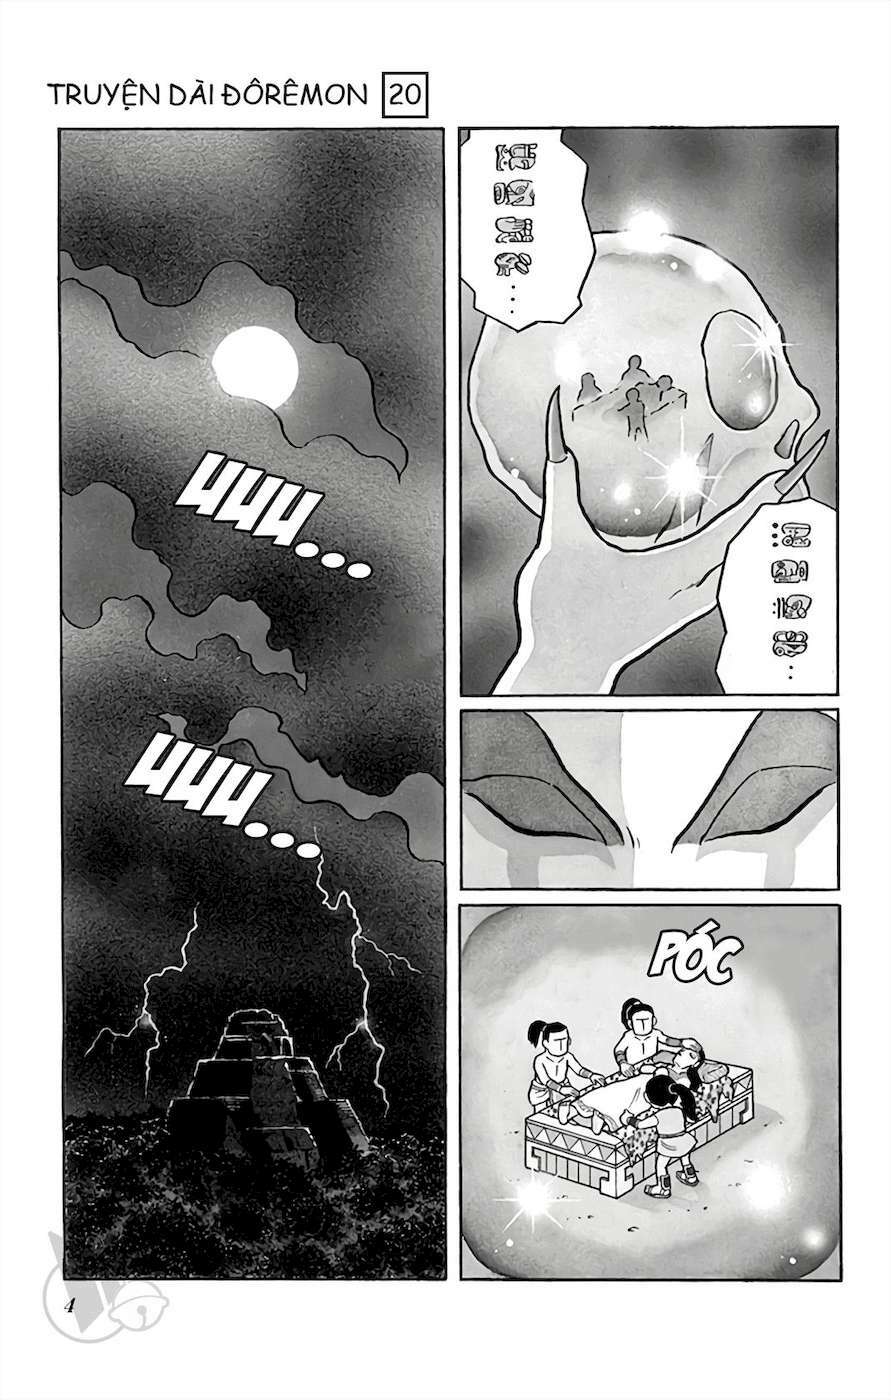 Truyện Tranh Doraemon: Truyền Thuyết Về Vua Mặt Trời Nôbita trang 3